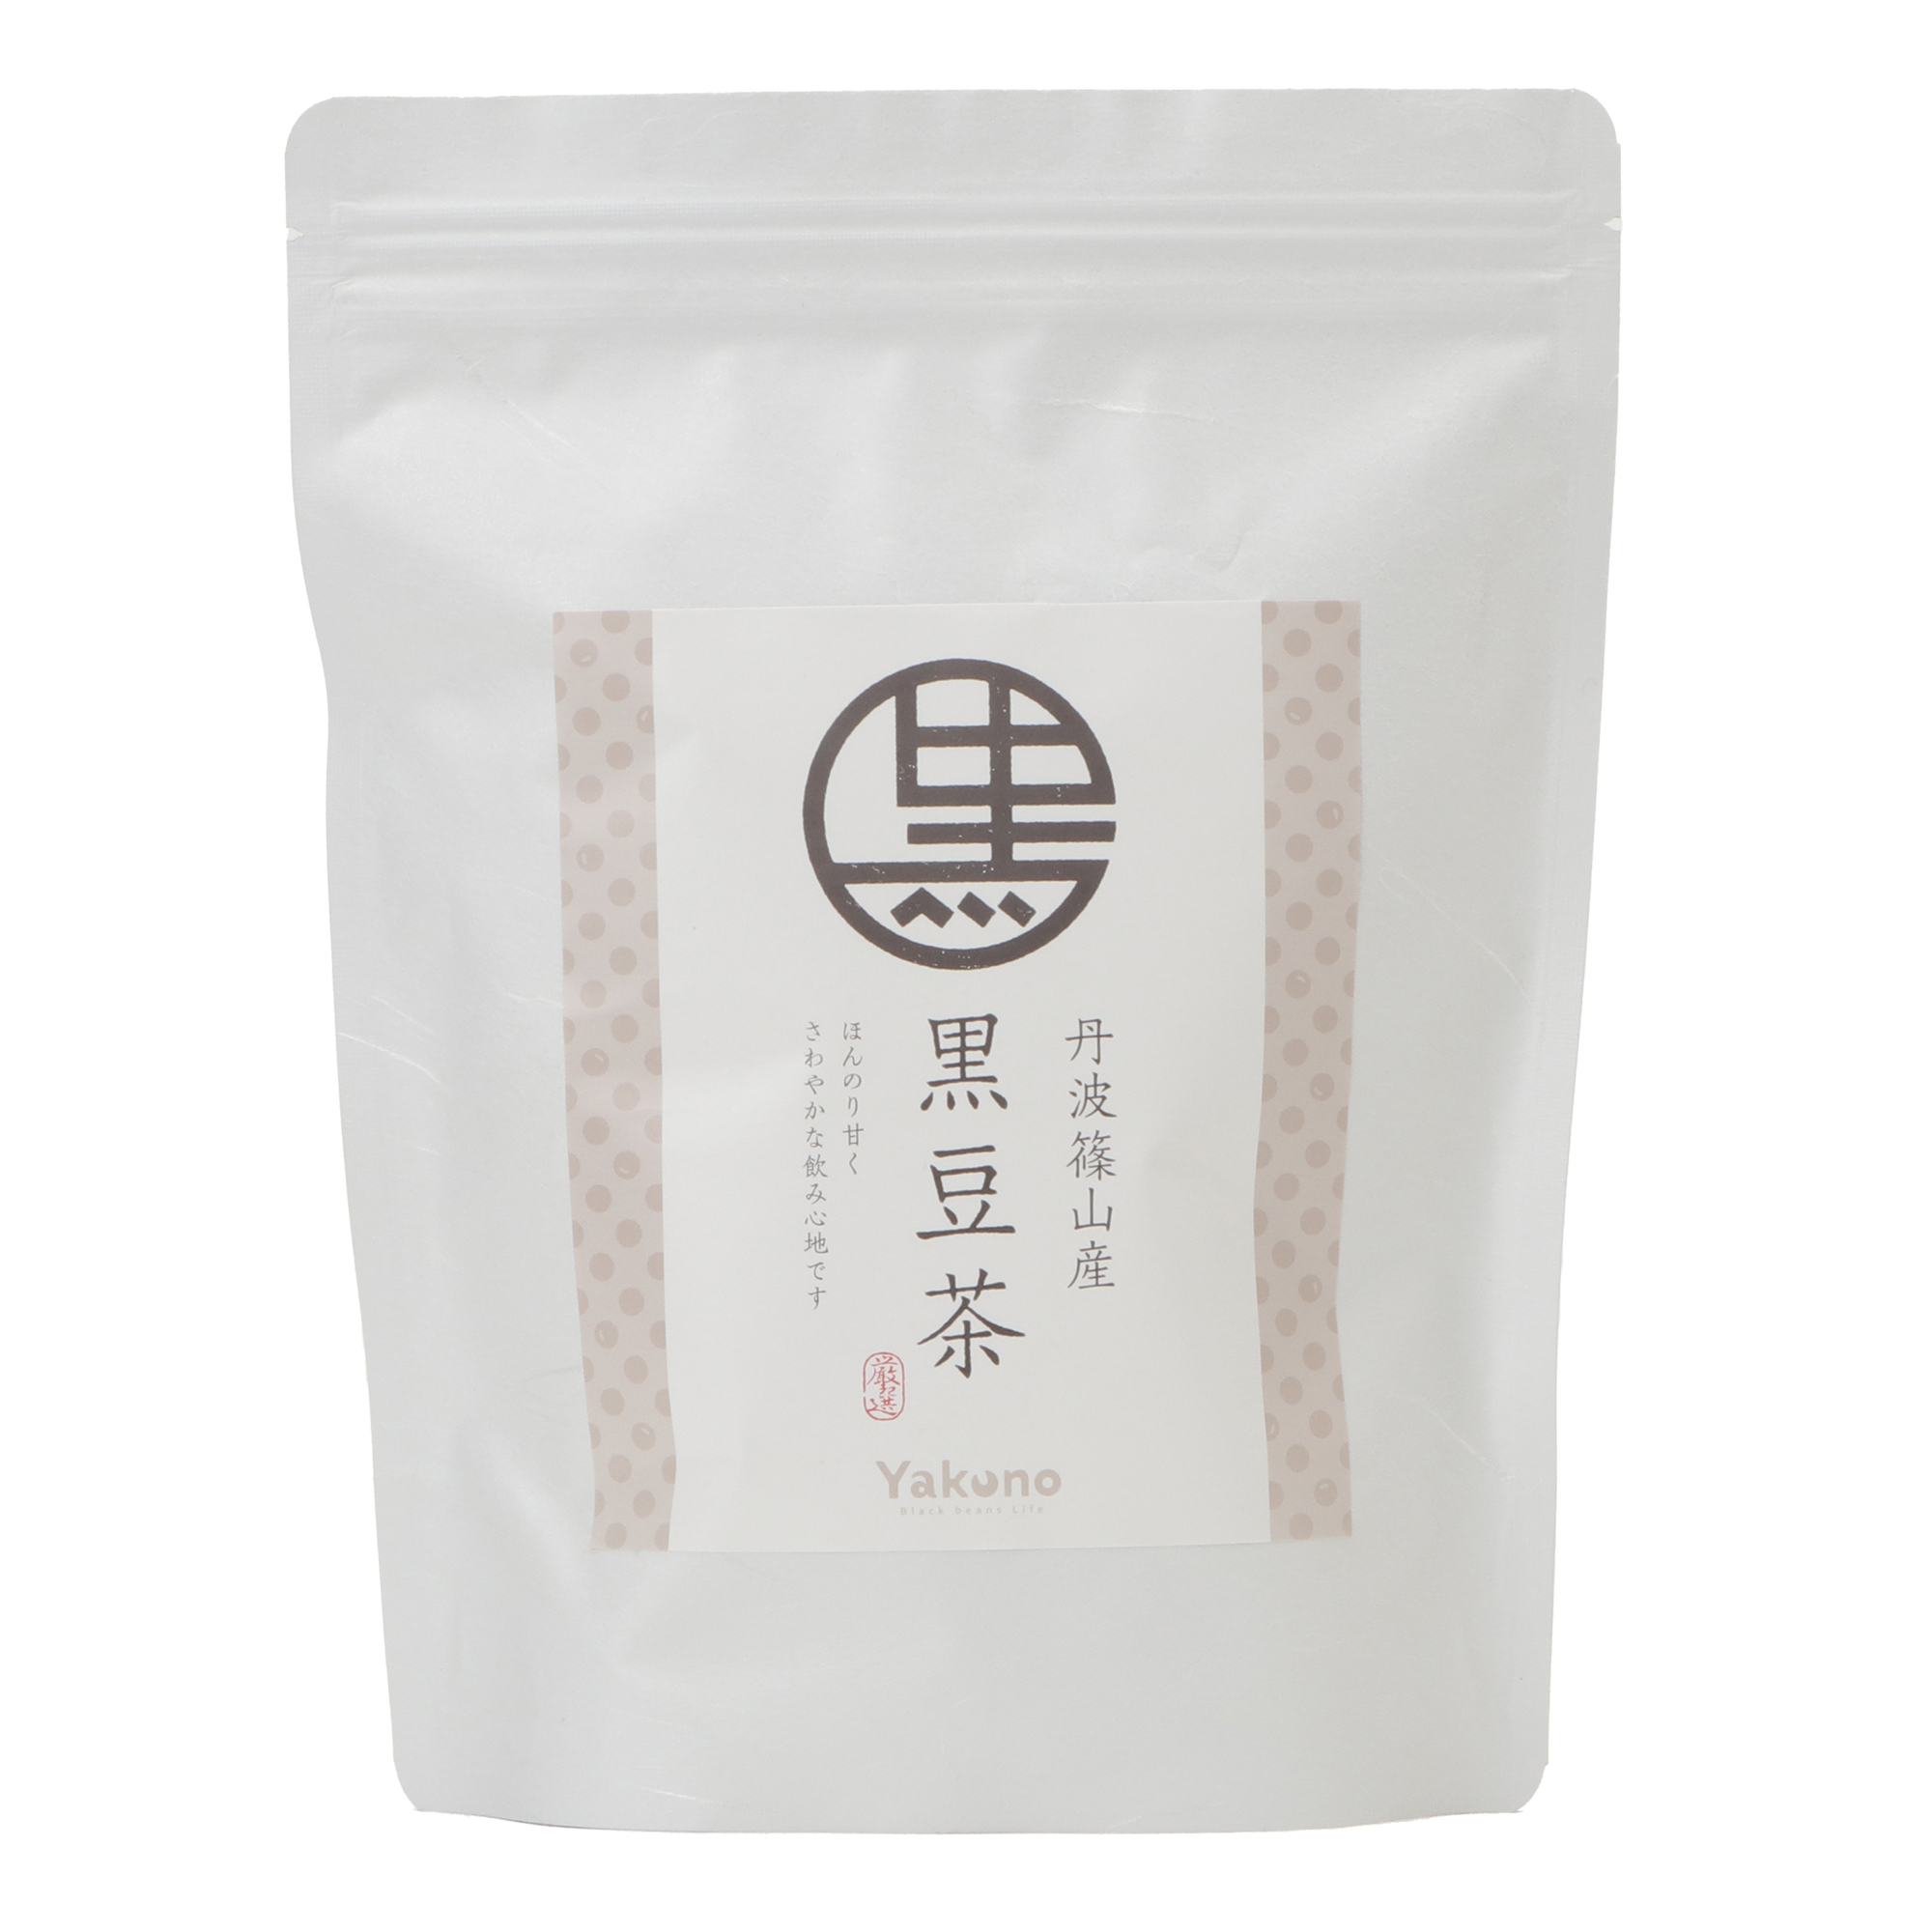 丹波篠山産 黒豆茶 10g (1リットル用)×30p